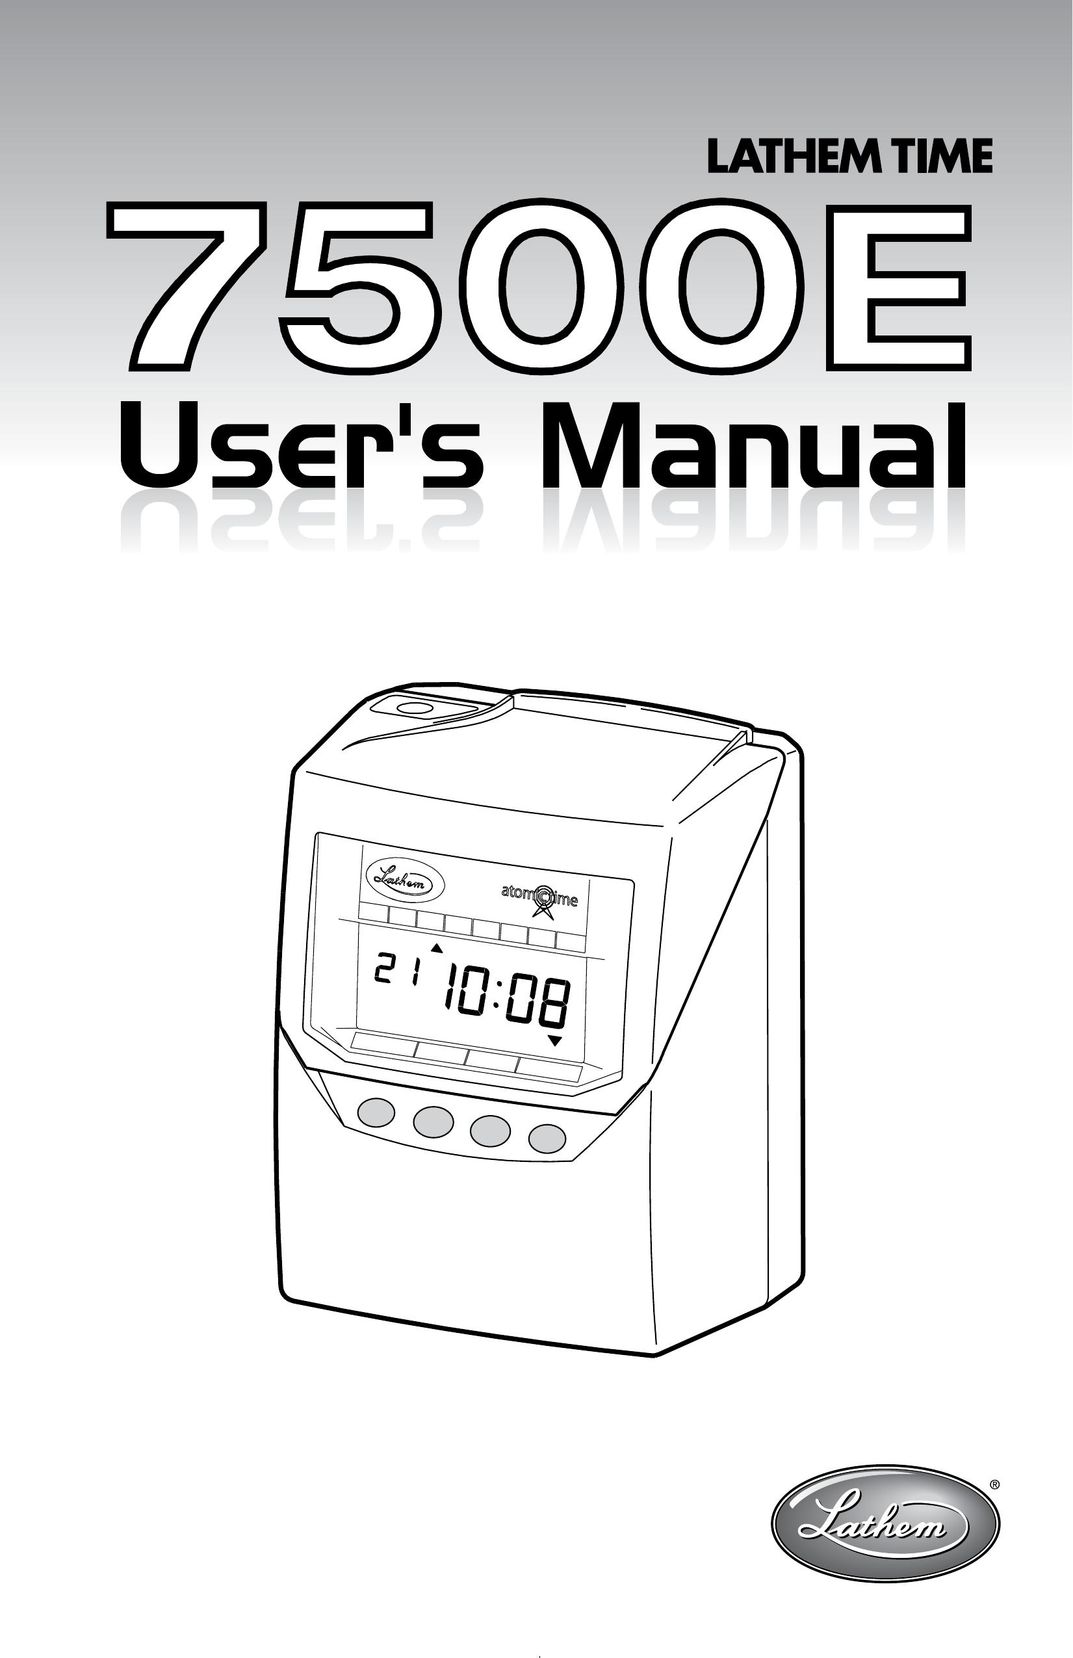 Lathem 7500E Clock User Manual